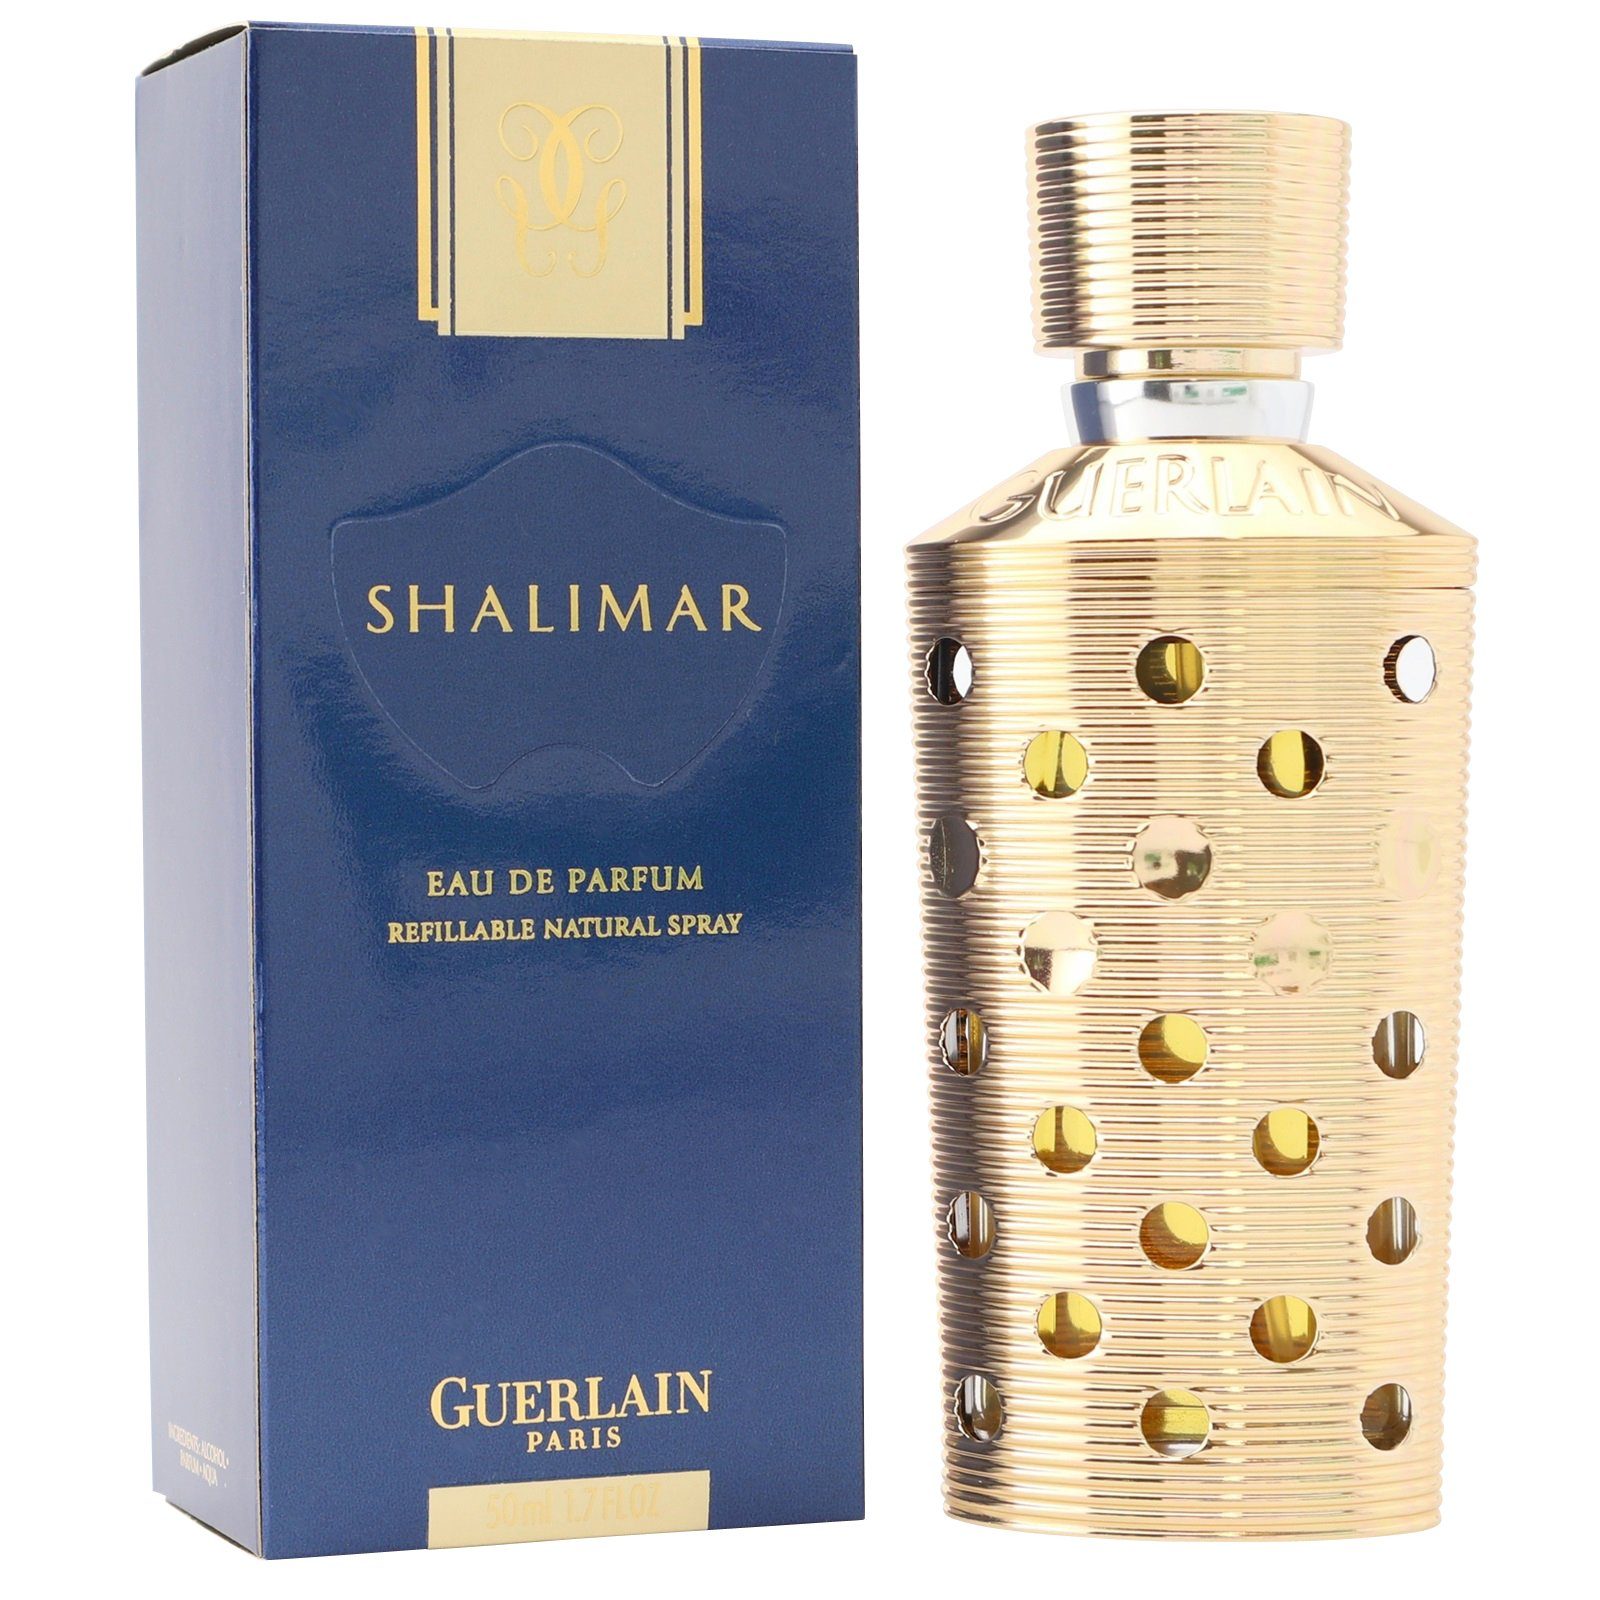 GUERLAIN Eau de Parfum Guerlain Shalimar Eau de Parfum Spray 50 ml refillable / rechargeable | Eau de Parfum